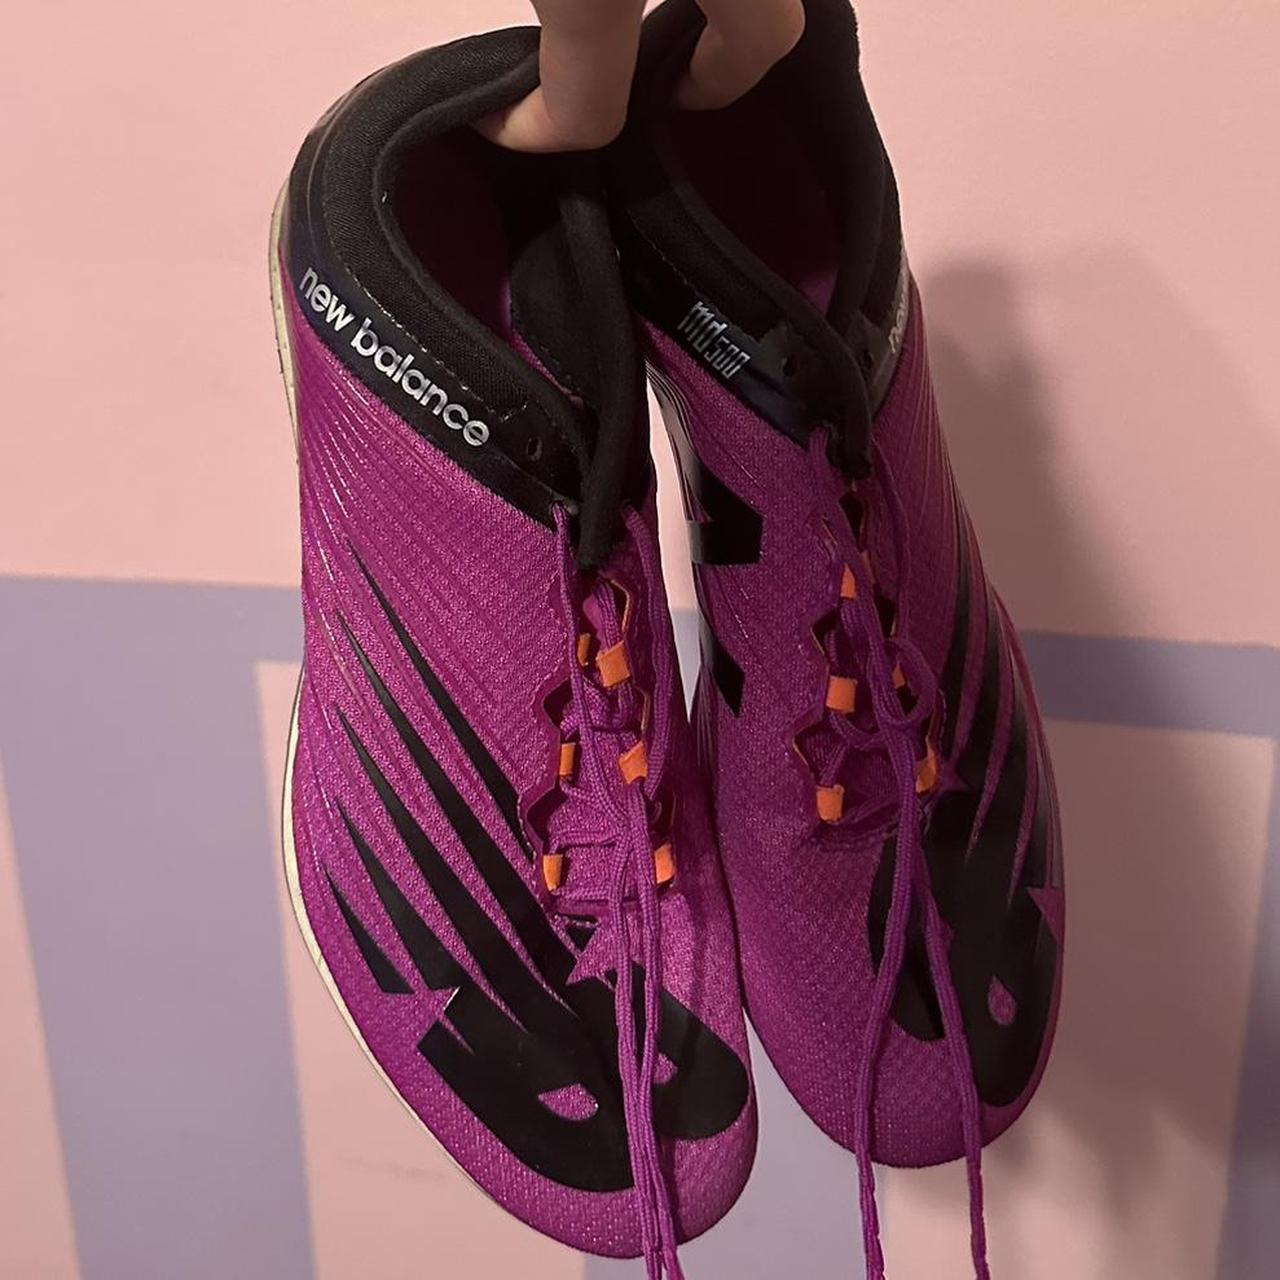 New Balance Women's Purple and Black Footwear | Depop